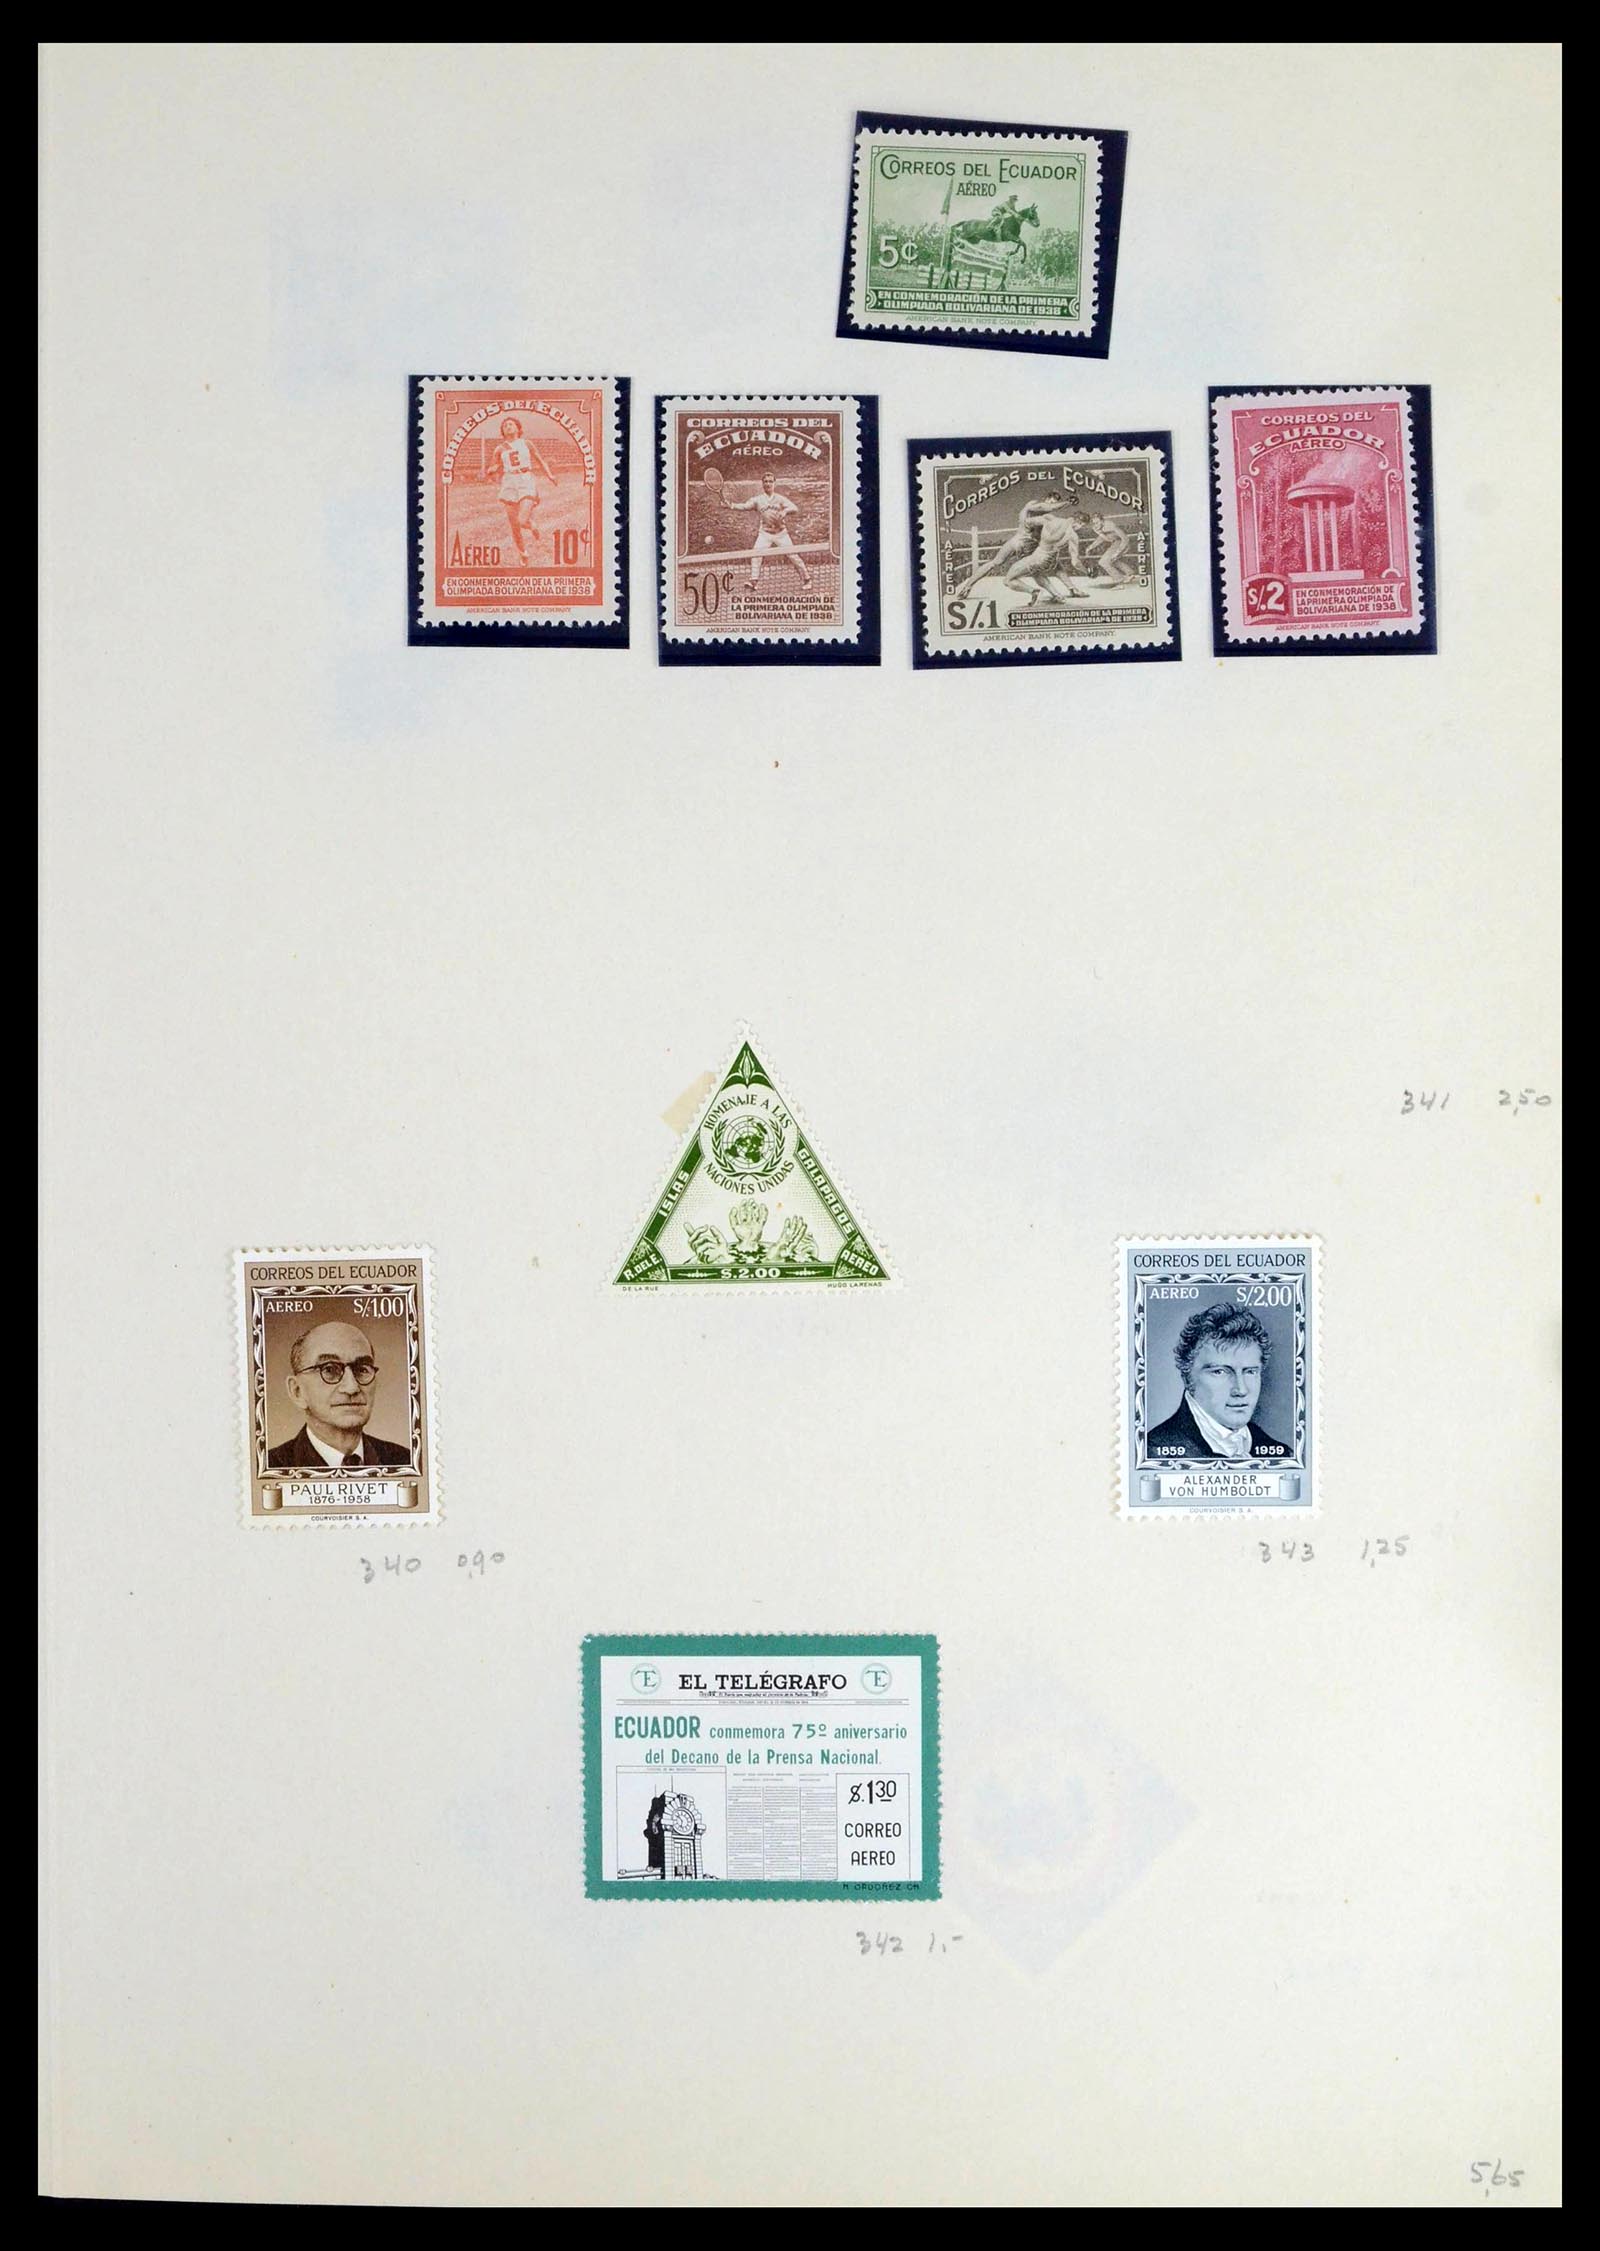 39456 0025 - Stamp collection 39456 Ecuador 1865-1960.